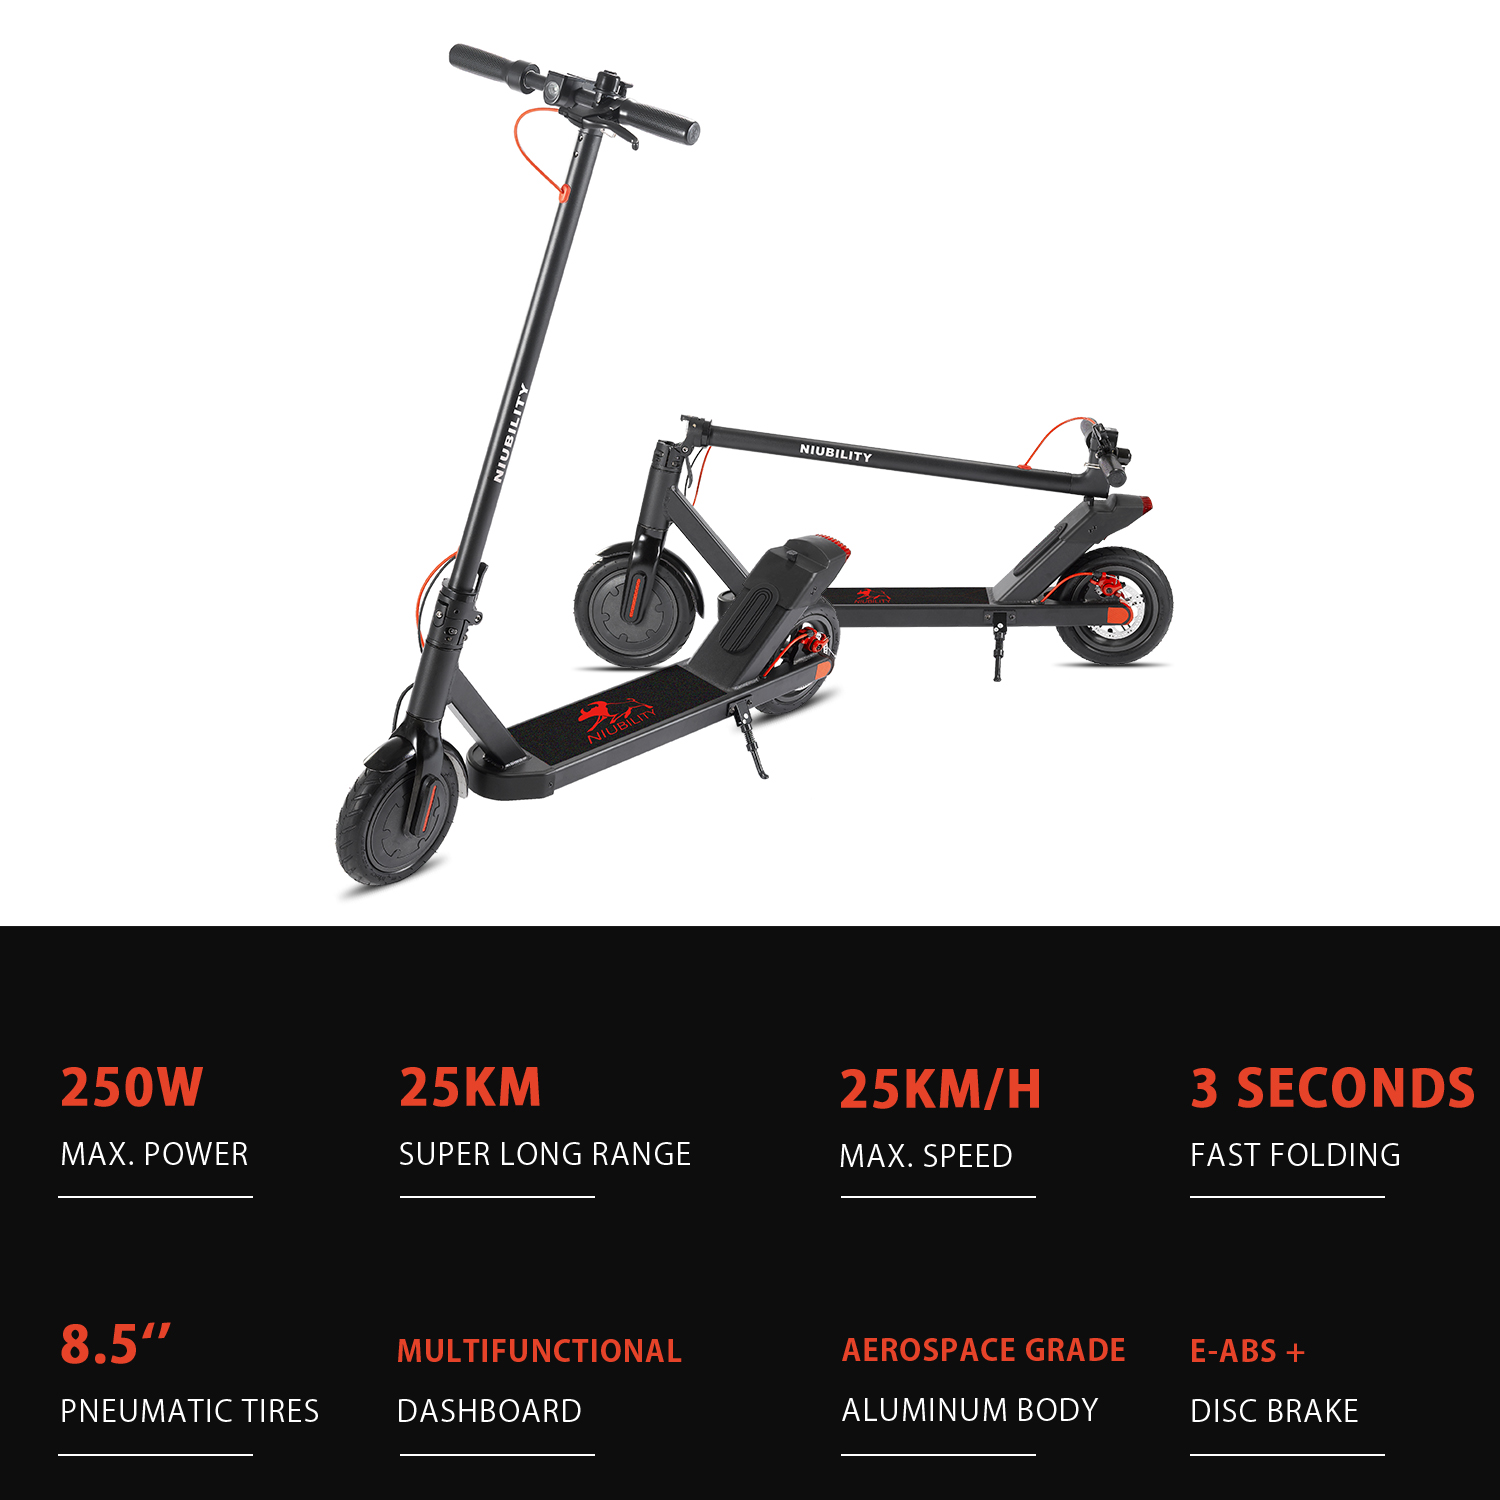 Trottinette electrique Niubility N1 Vitesse maximale 25 km/h Charge 120 kg Noir le meilleur scooter électrique 2020 